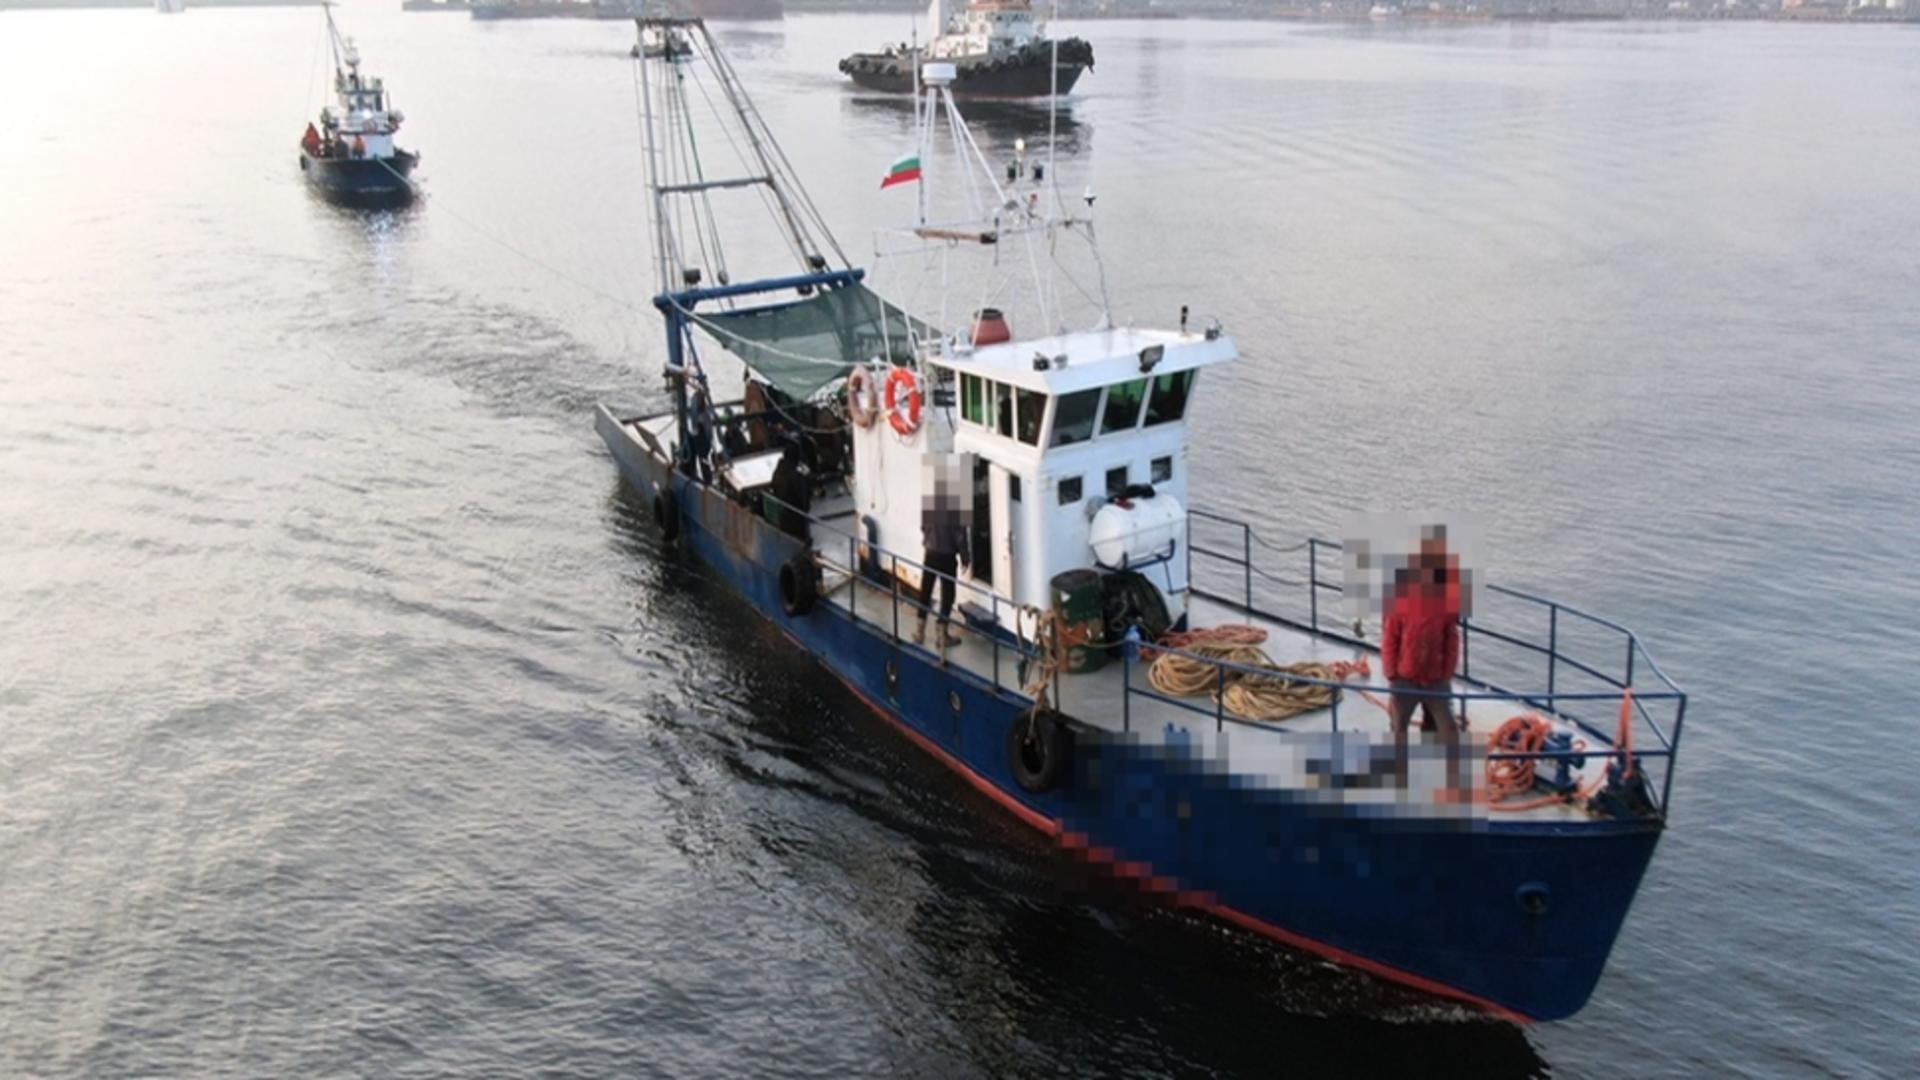  Trei pescadoare bulgăreşti au fost prinse în timp ce pescuiau ilegal în zona economică exclusivă a României în Marea Neagră